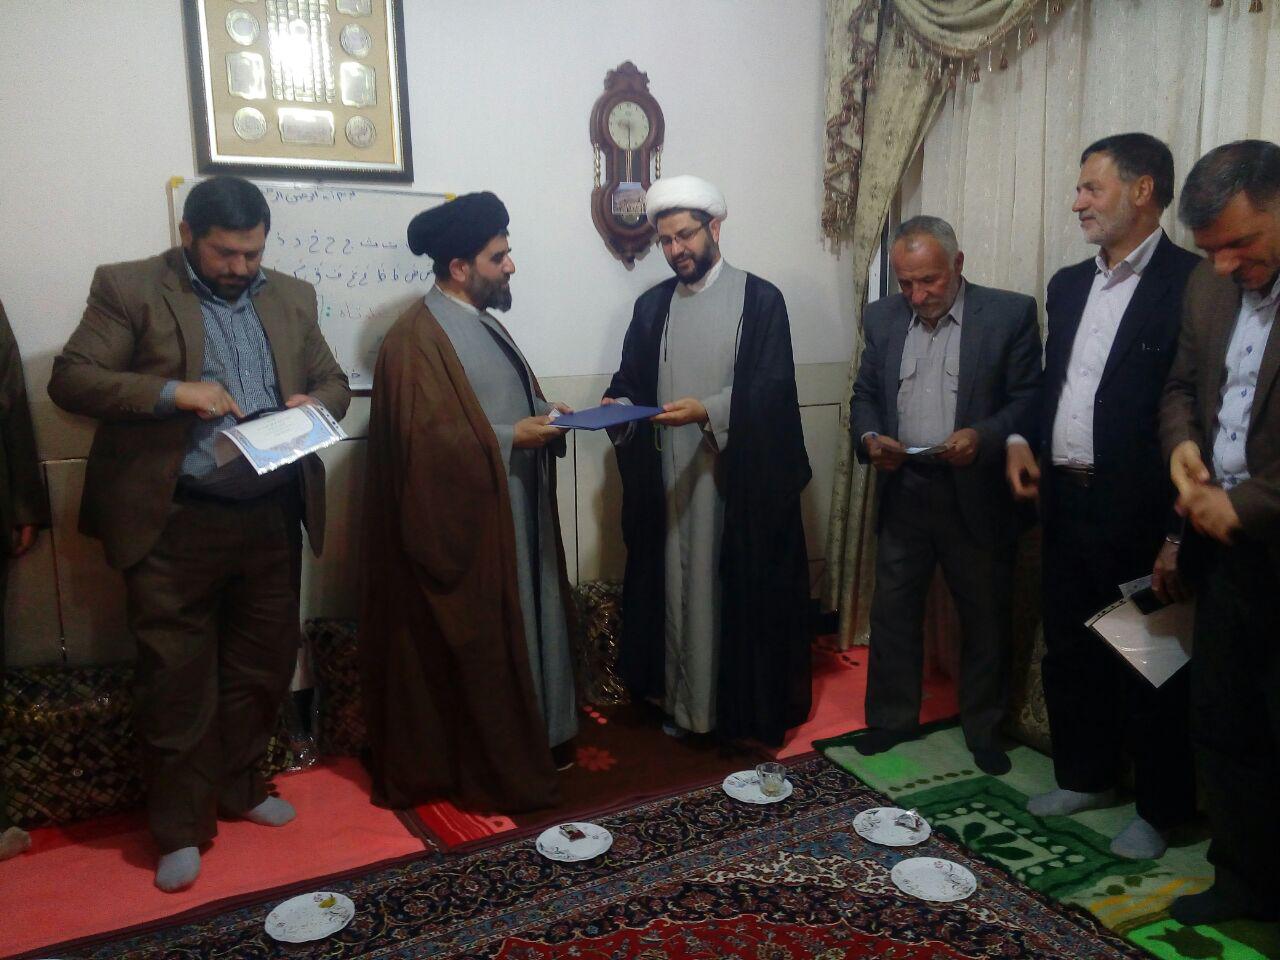 اهدای لوح تقدیر به حجت الاسلام موسوی لارگانی توسط امام جمعه محترم شهر قهدریجان به خاطر زحمات و تلاش